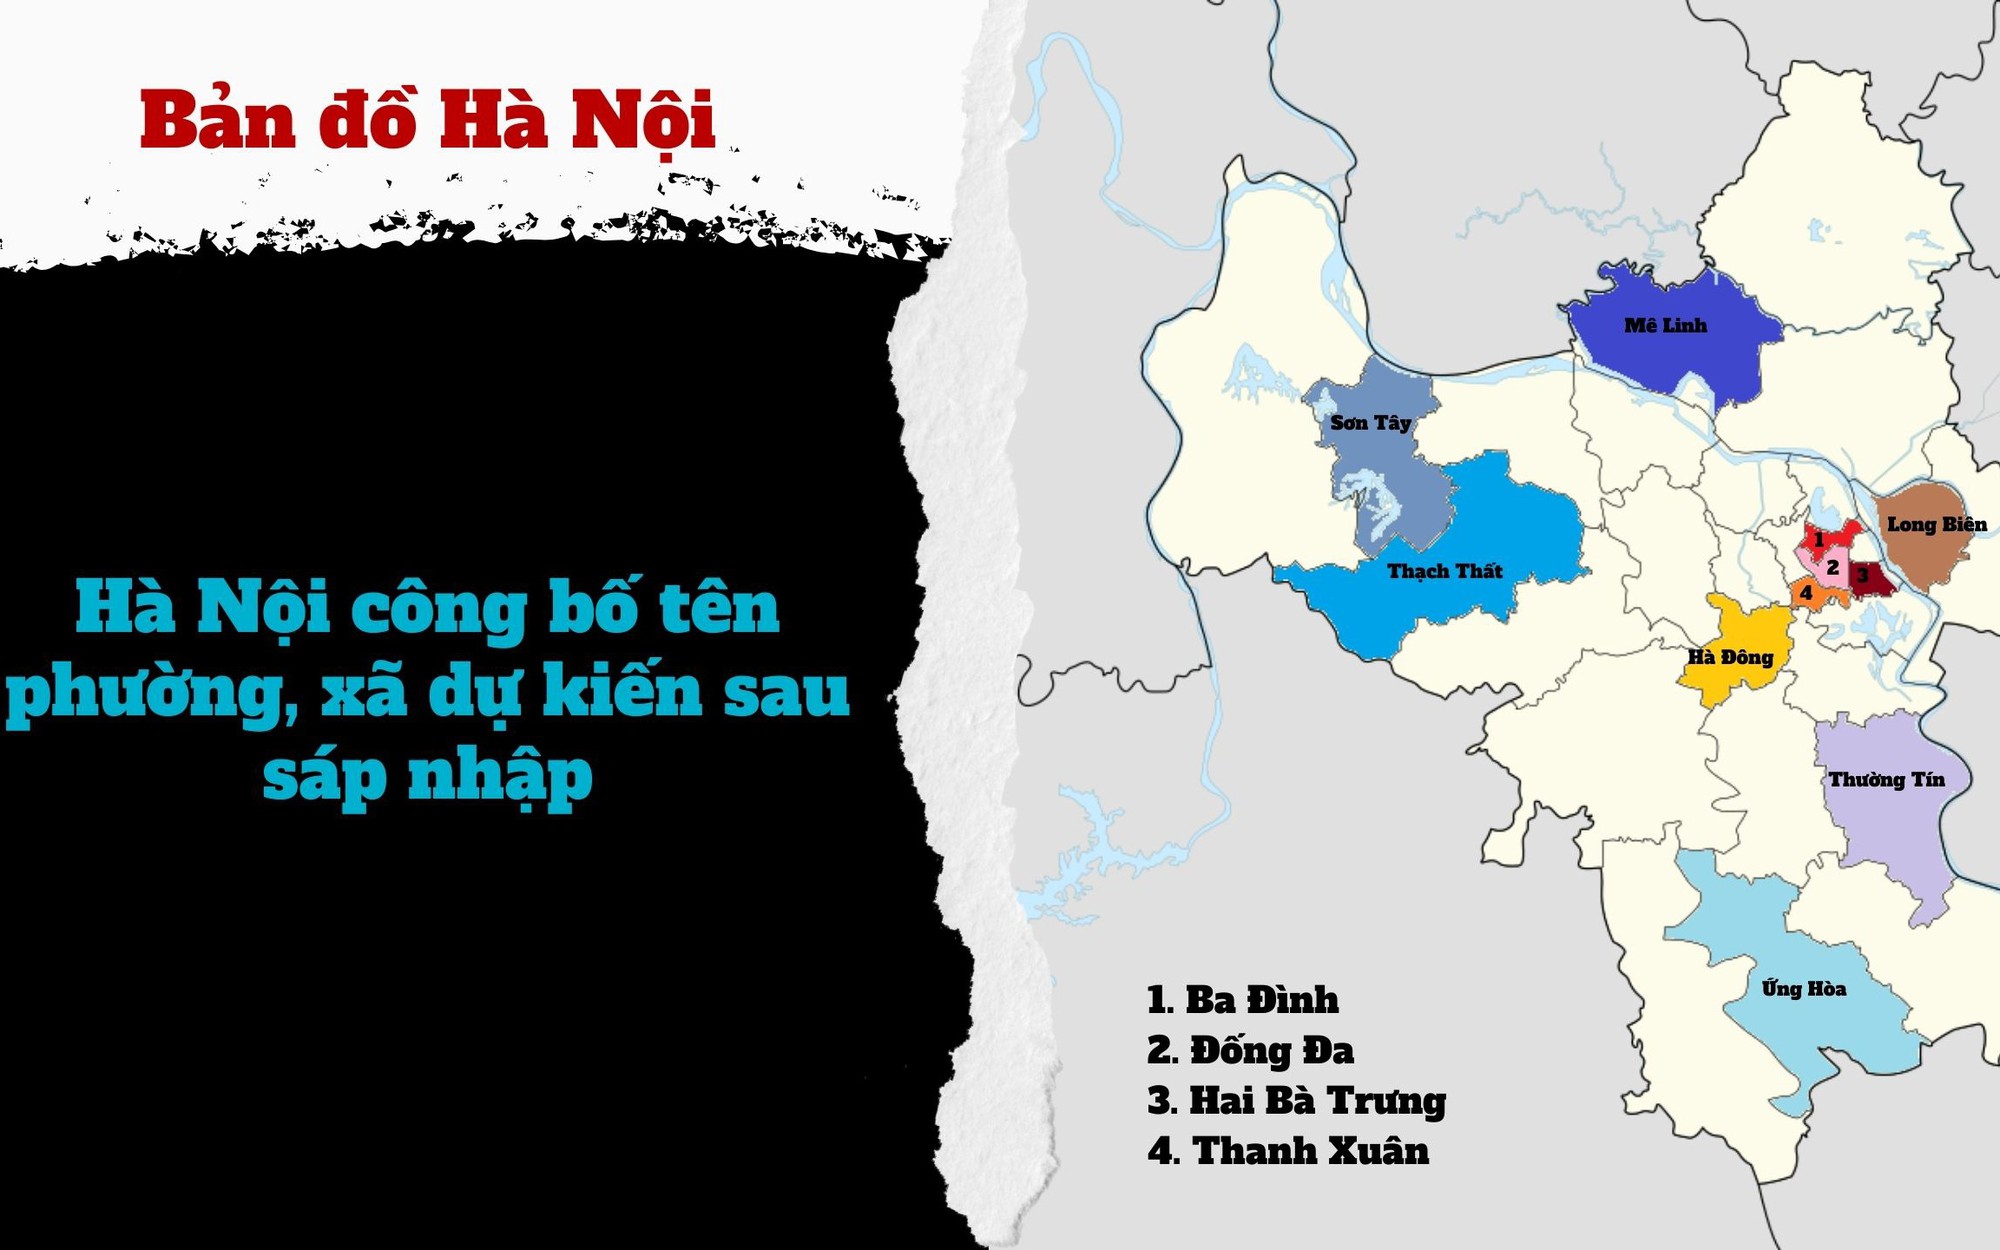 Sau khi sáp nhập, các xã, phường ở Hà Nội có tên gọi mới như thế nào?